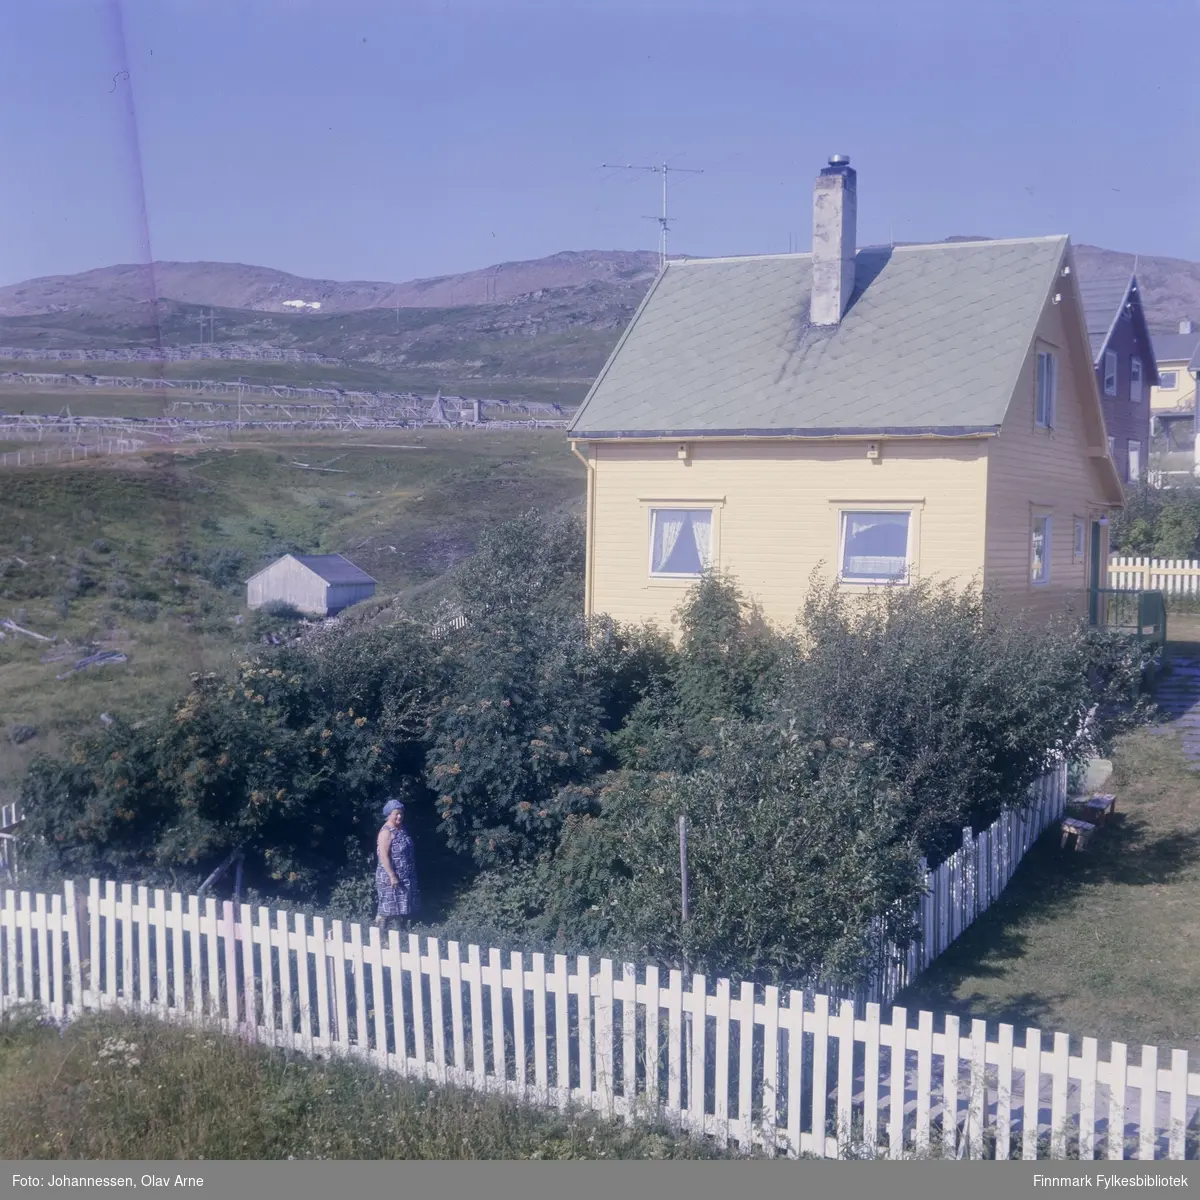 Foto av bolighus med hage i Fjellvegen i Båtsfjord (Finnmark)

Huset var eid av Svendsen familie på 1960/70-tallet

 En kvinne står blant trærne i hagen og i bakgrunnen kan man se fjell

Foto trolig tatt på 1960/70-tallet